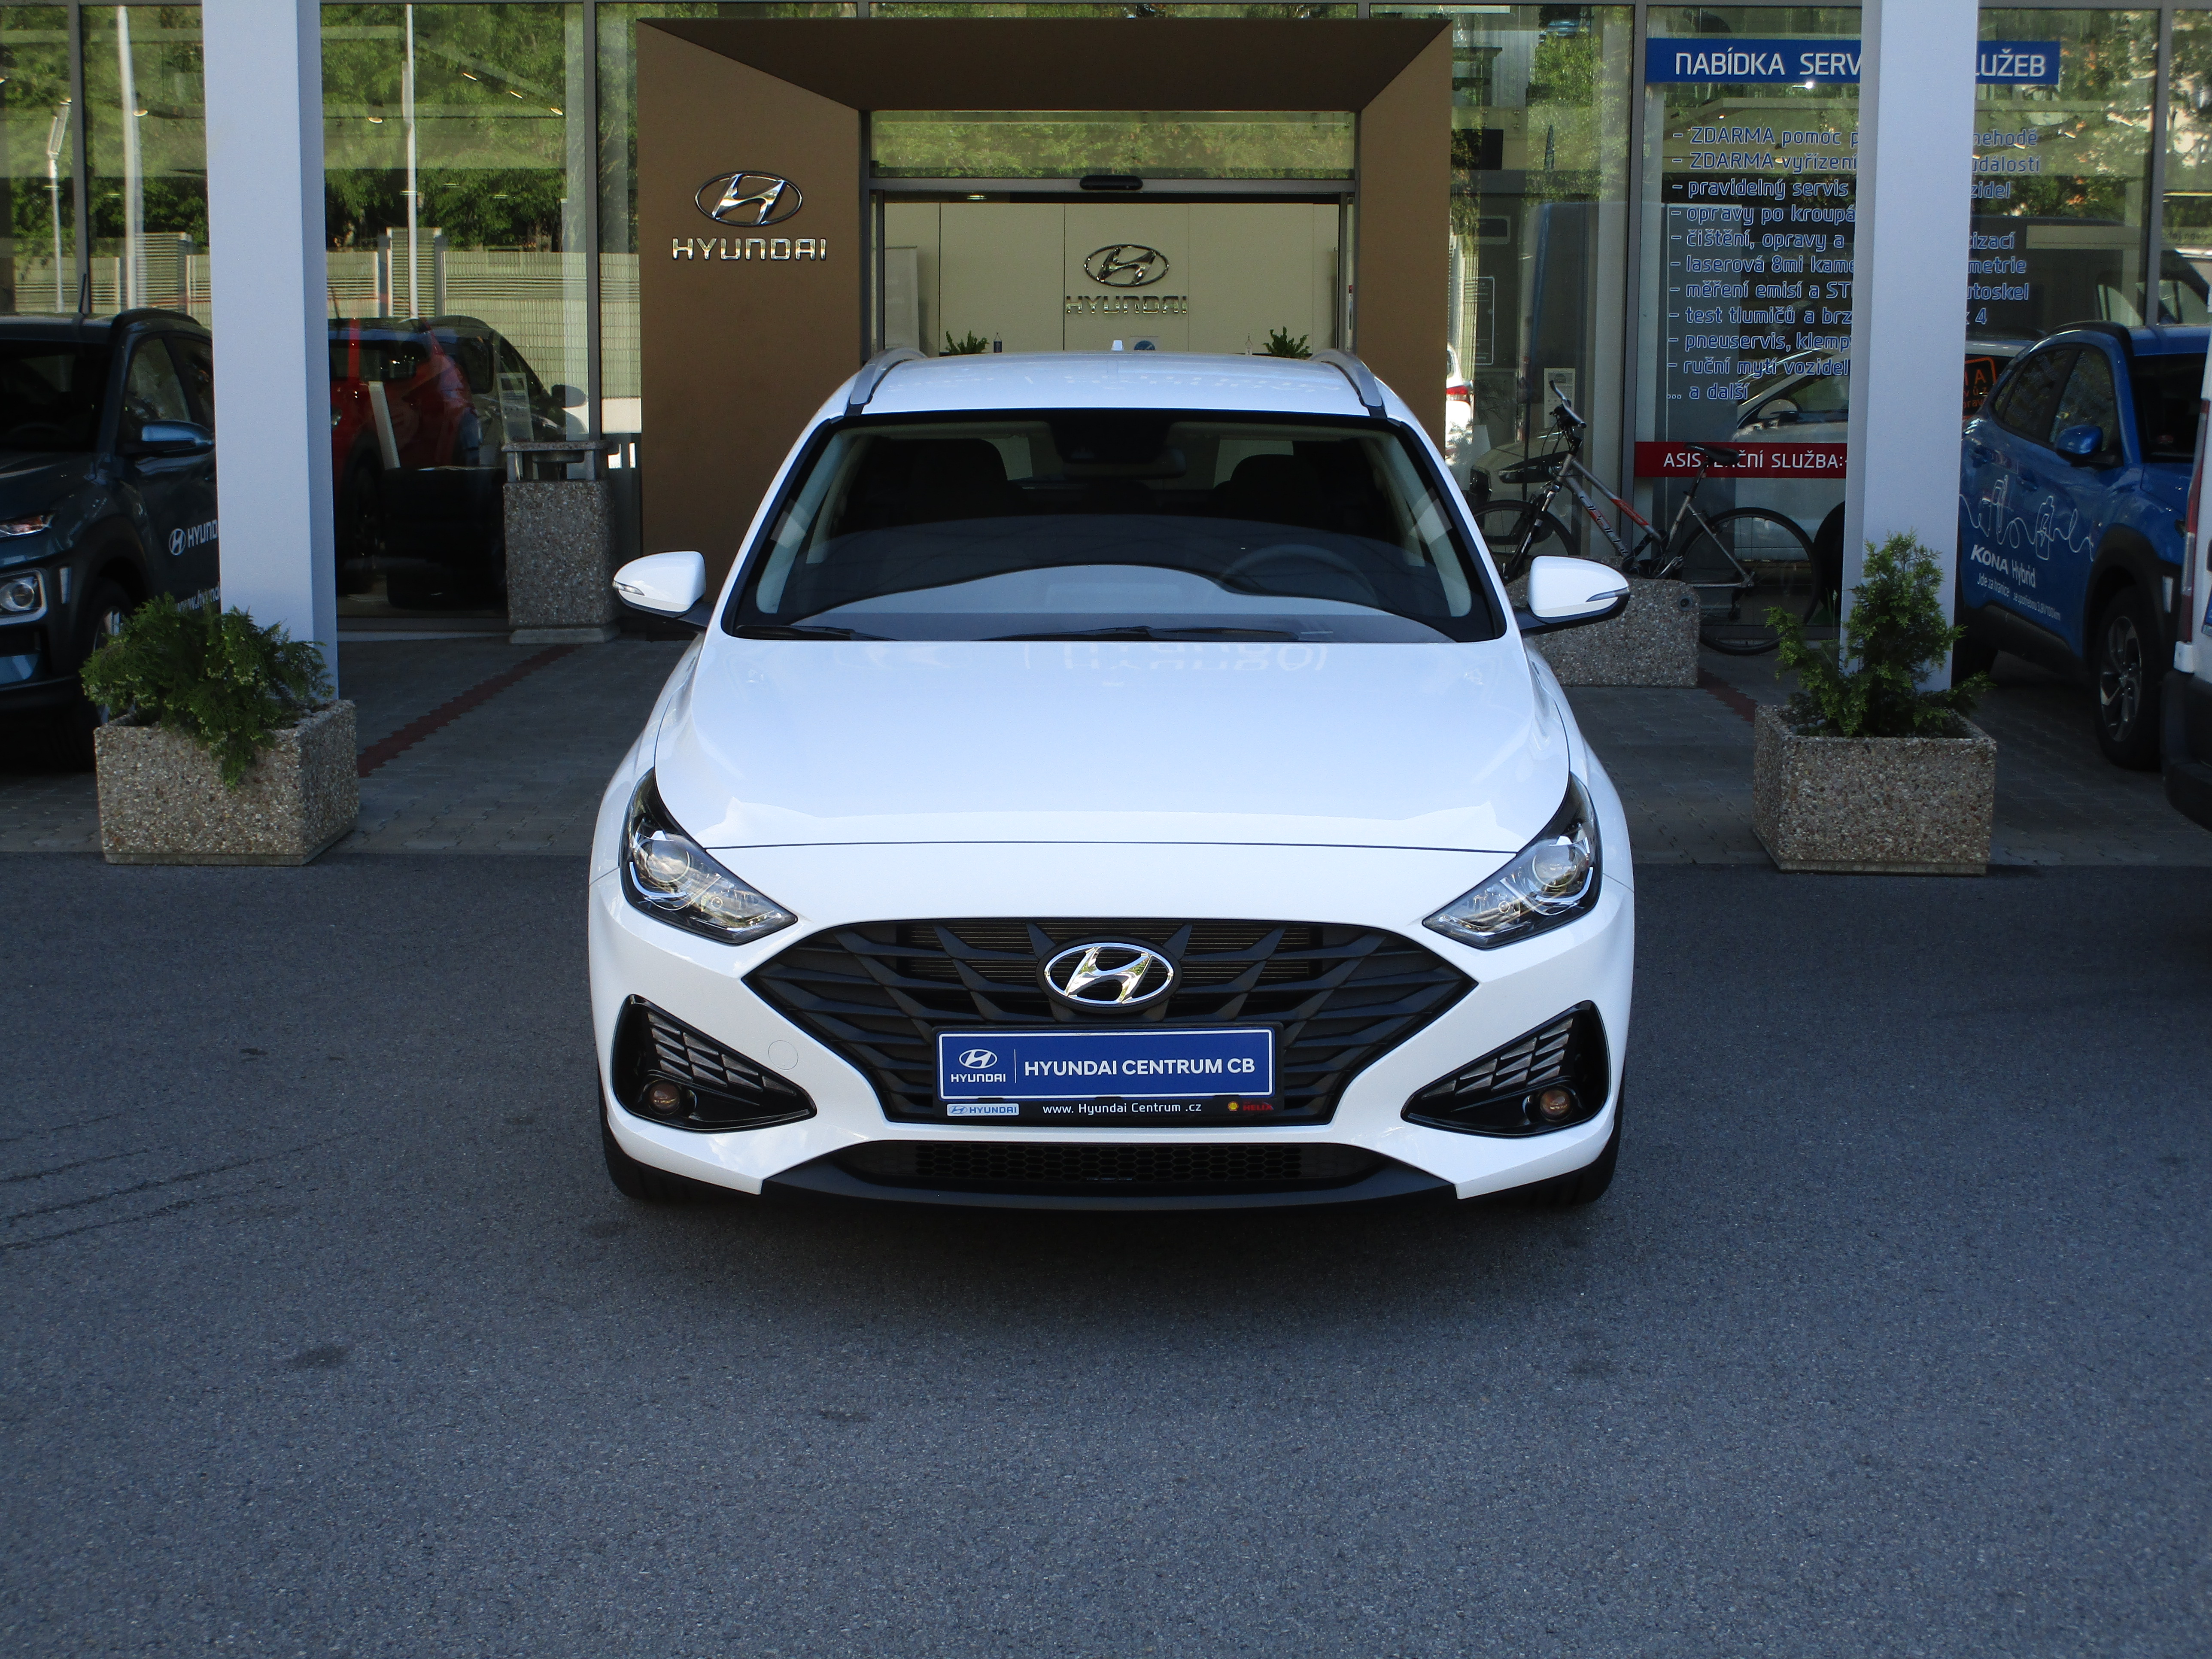 Nová i30 kombi Hyundai Centrum CB s.r.o.